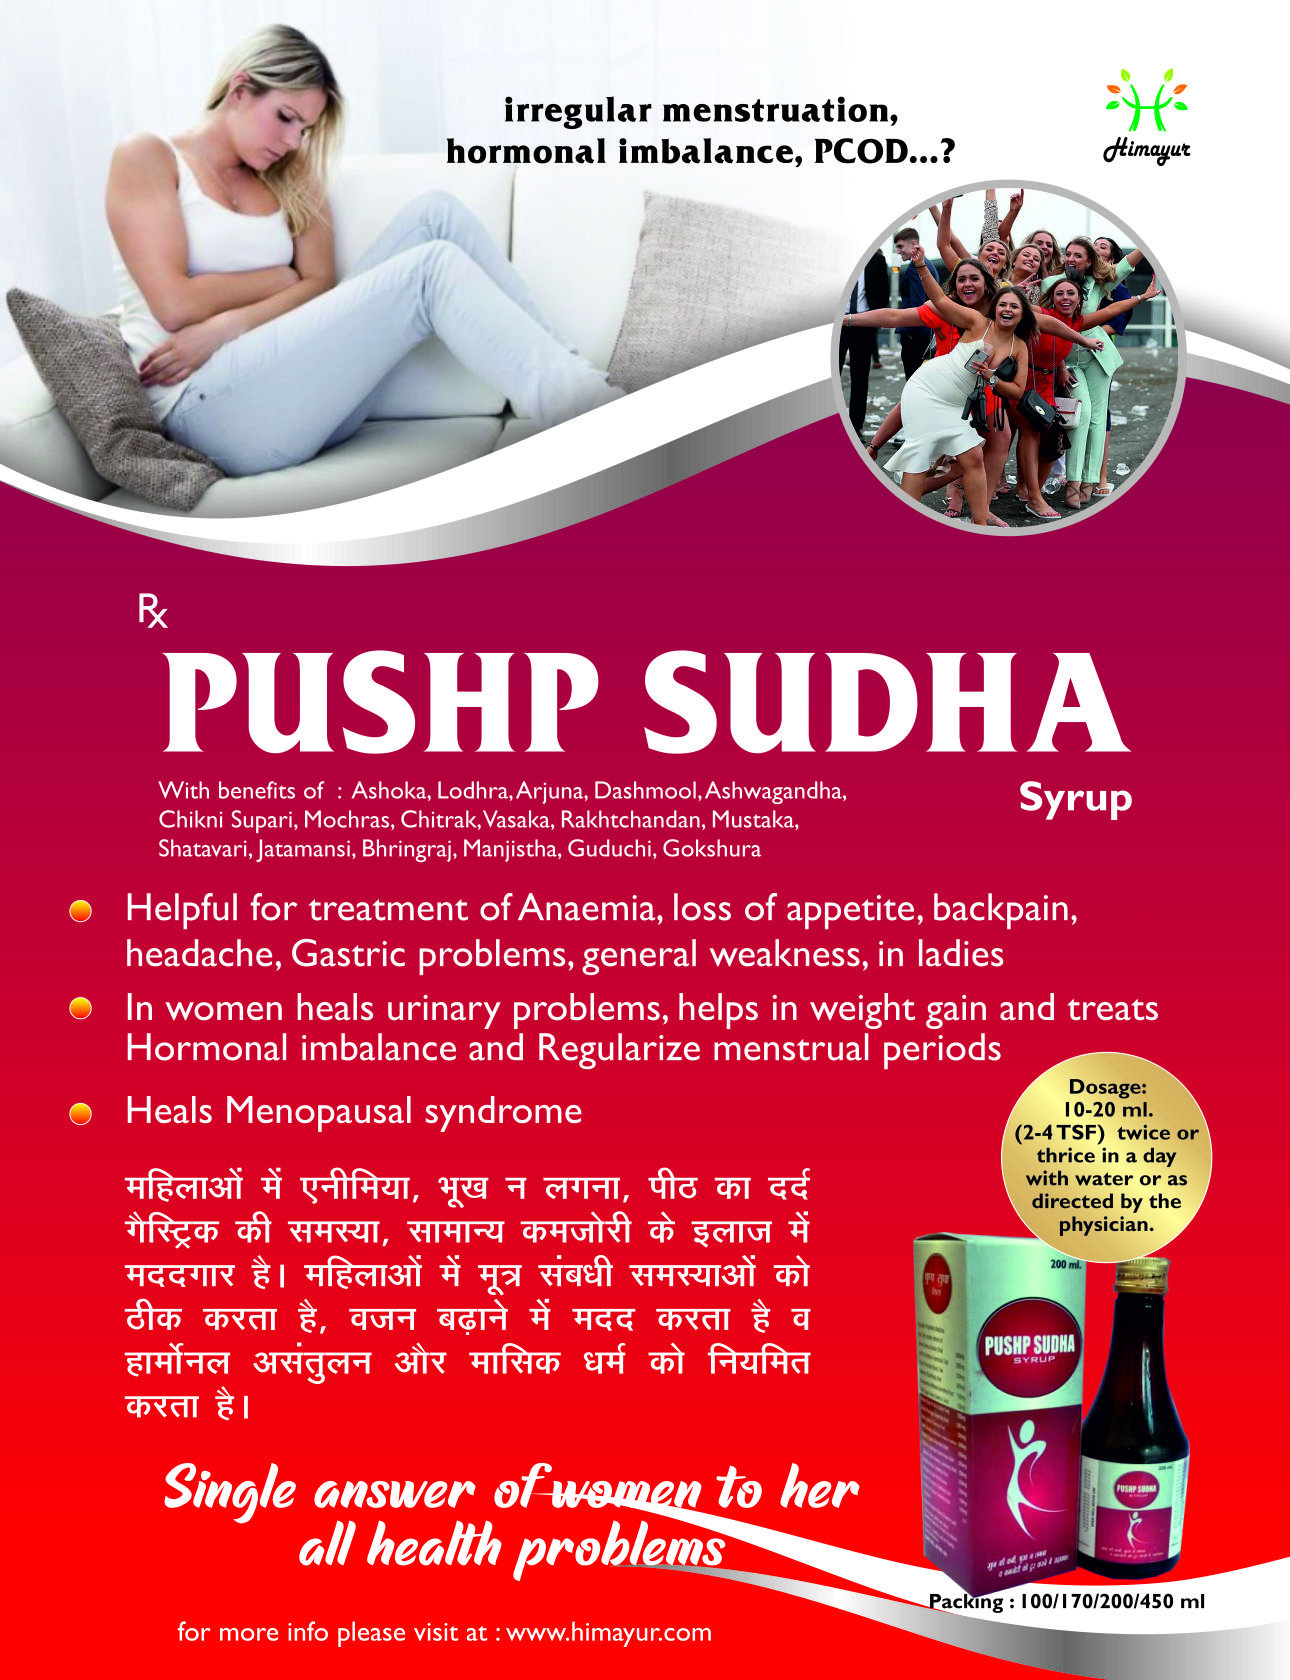 Pushp Sudha Visual